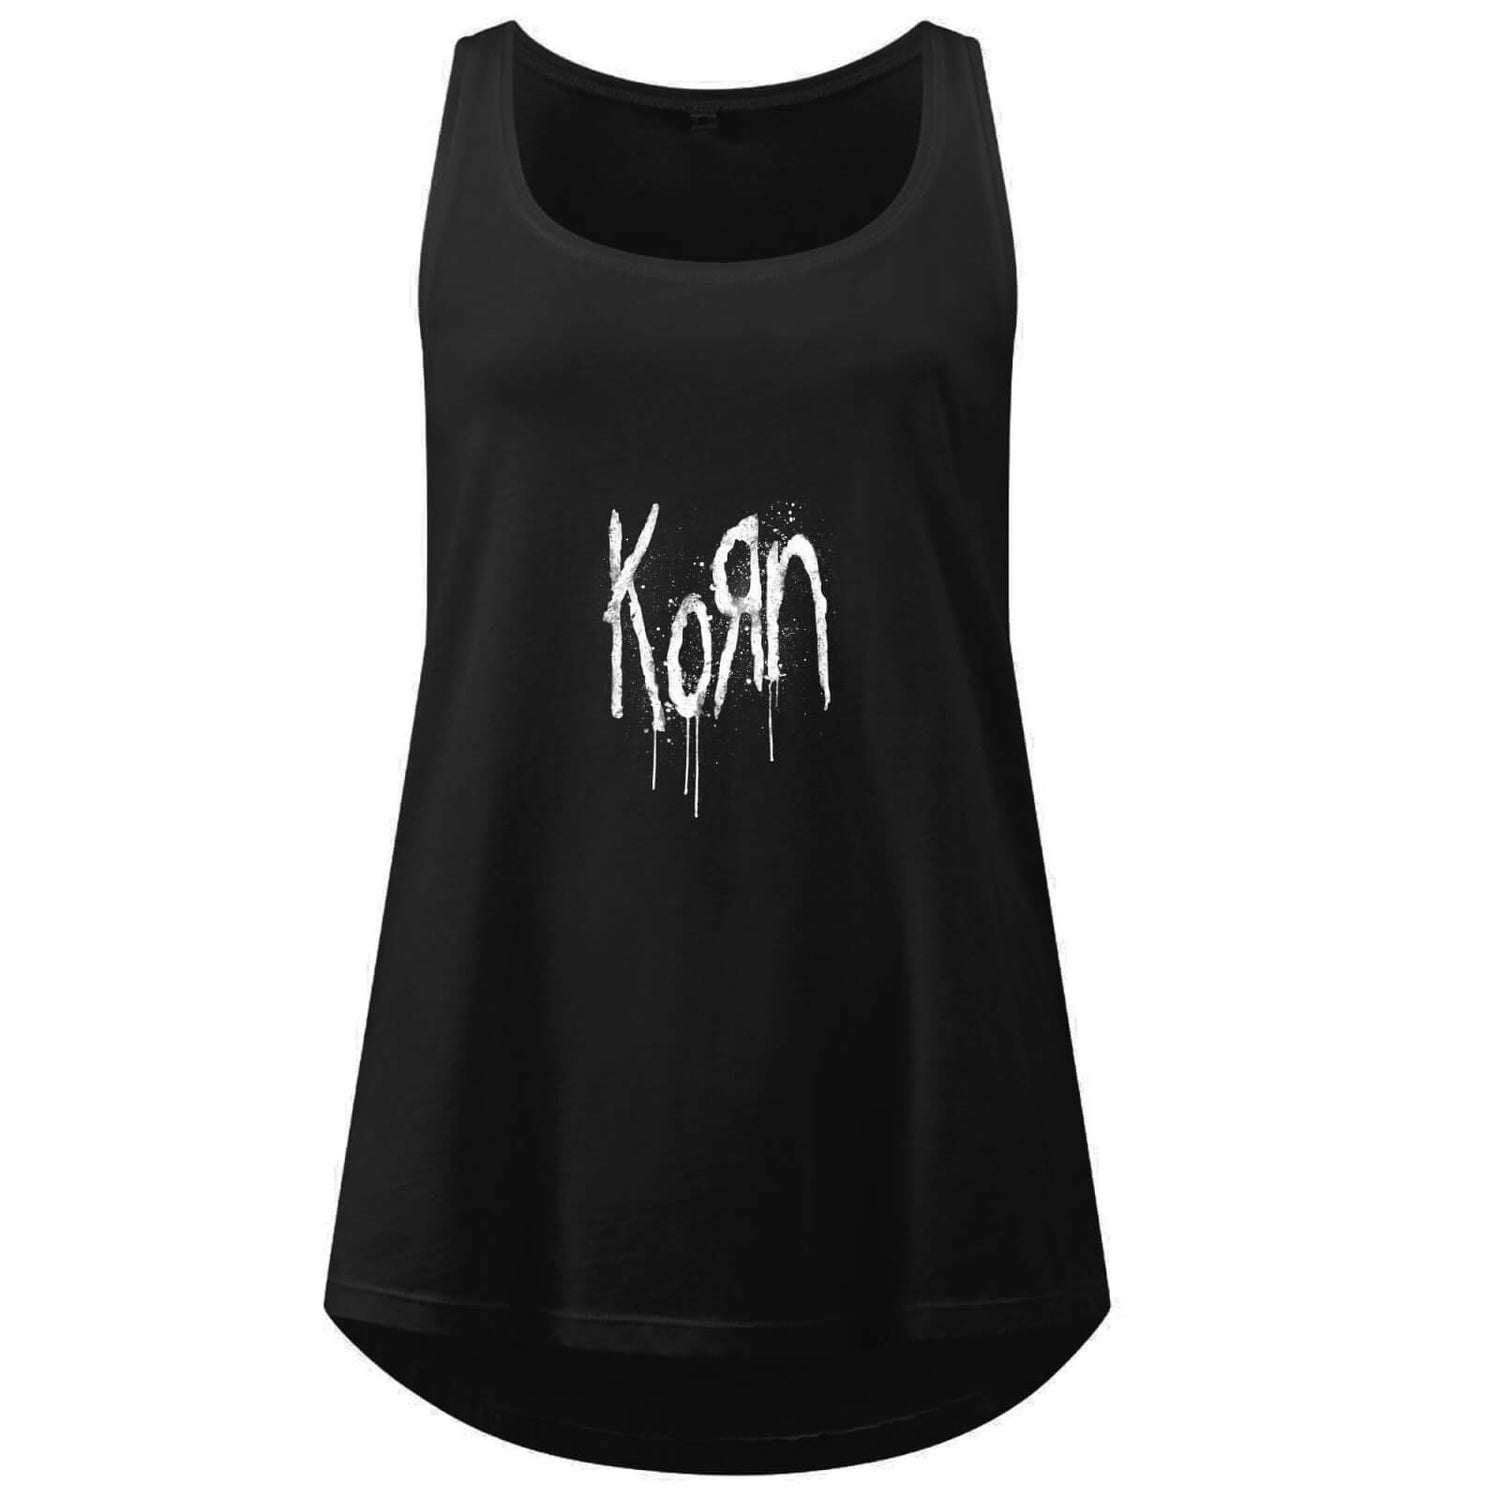 Korn Splatter Women's Vest - Black - L